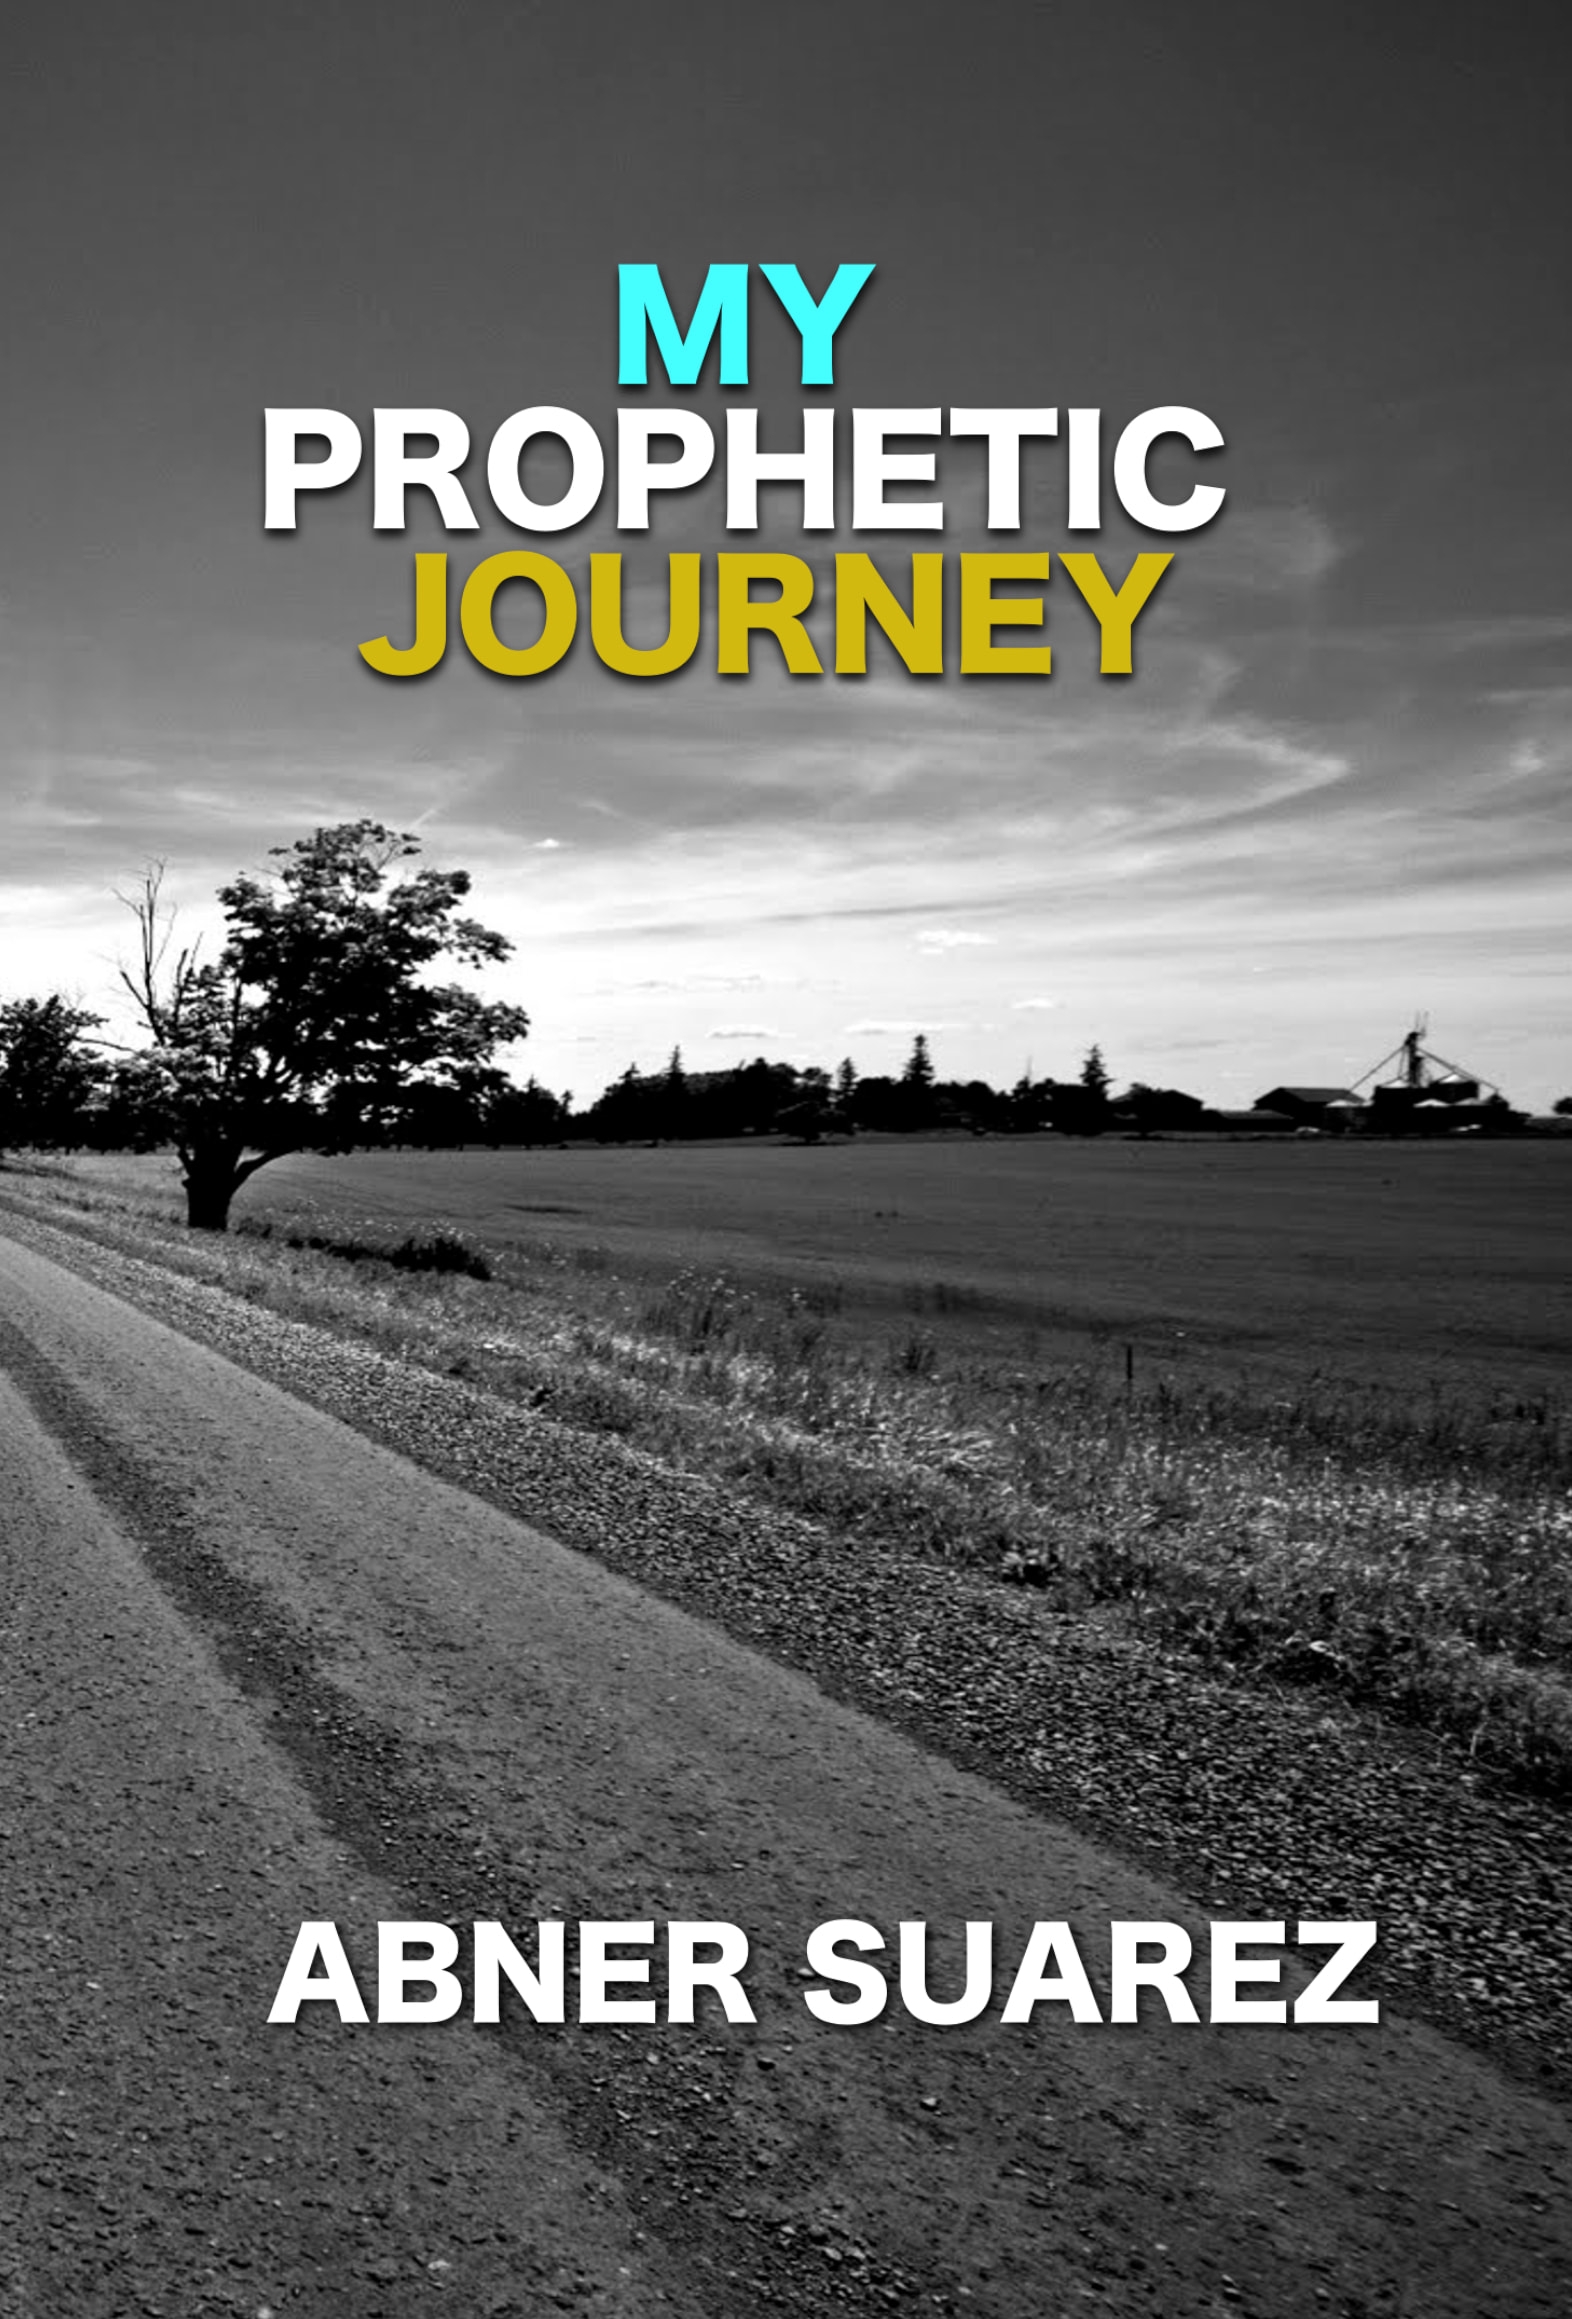 journey films prophetic voices